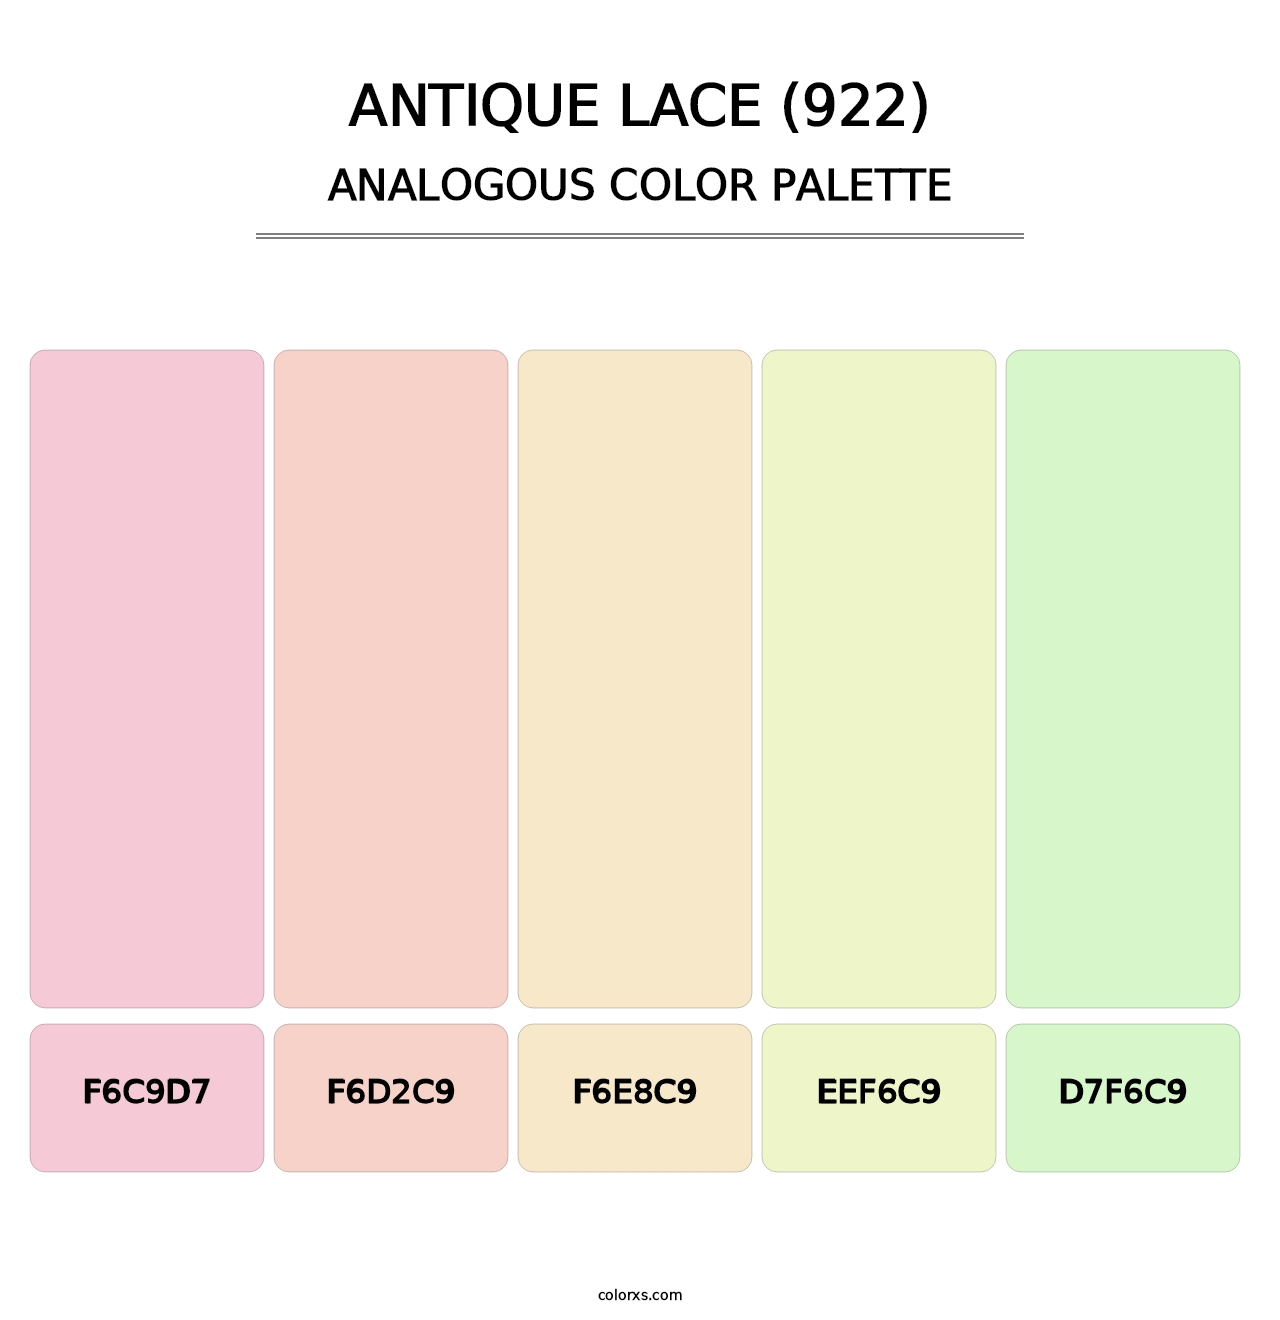 Antique Lace (922) - Analogous Color Palette